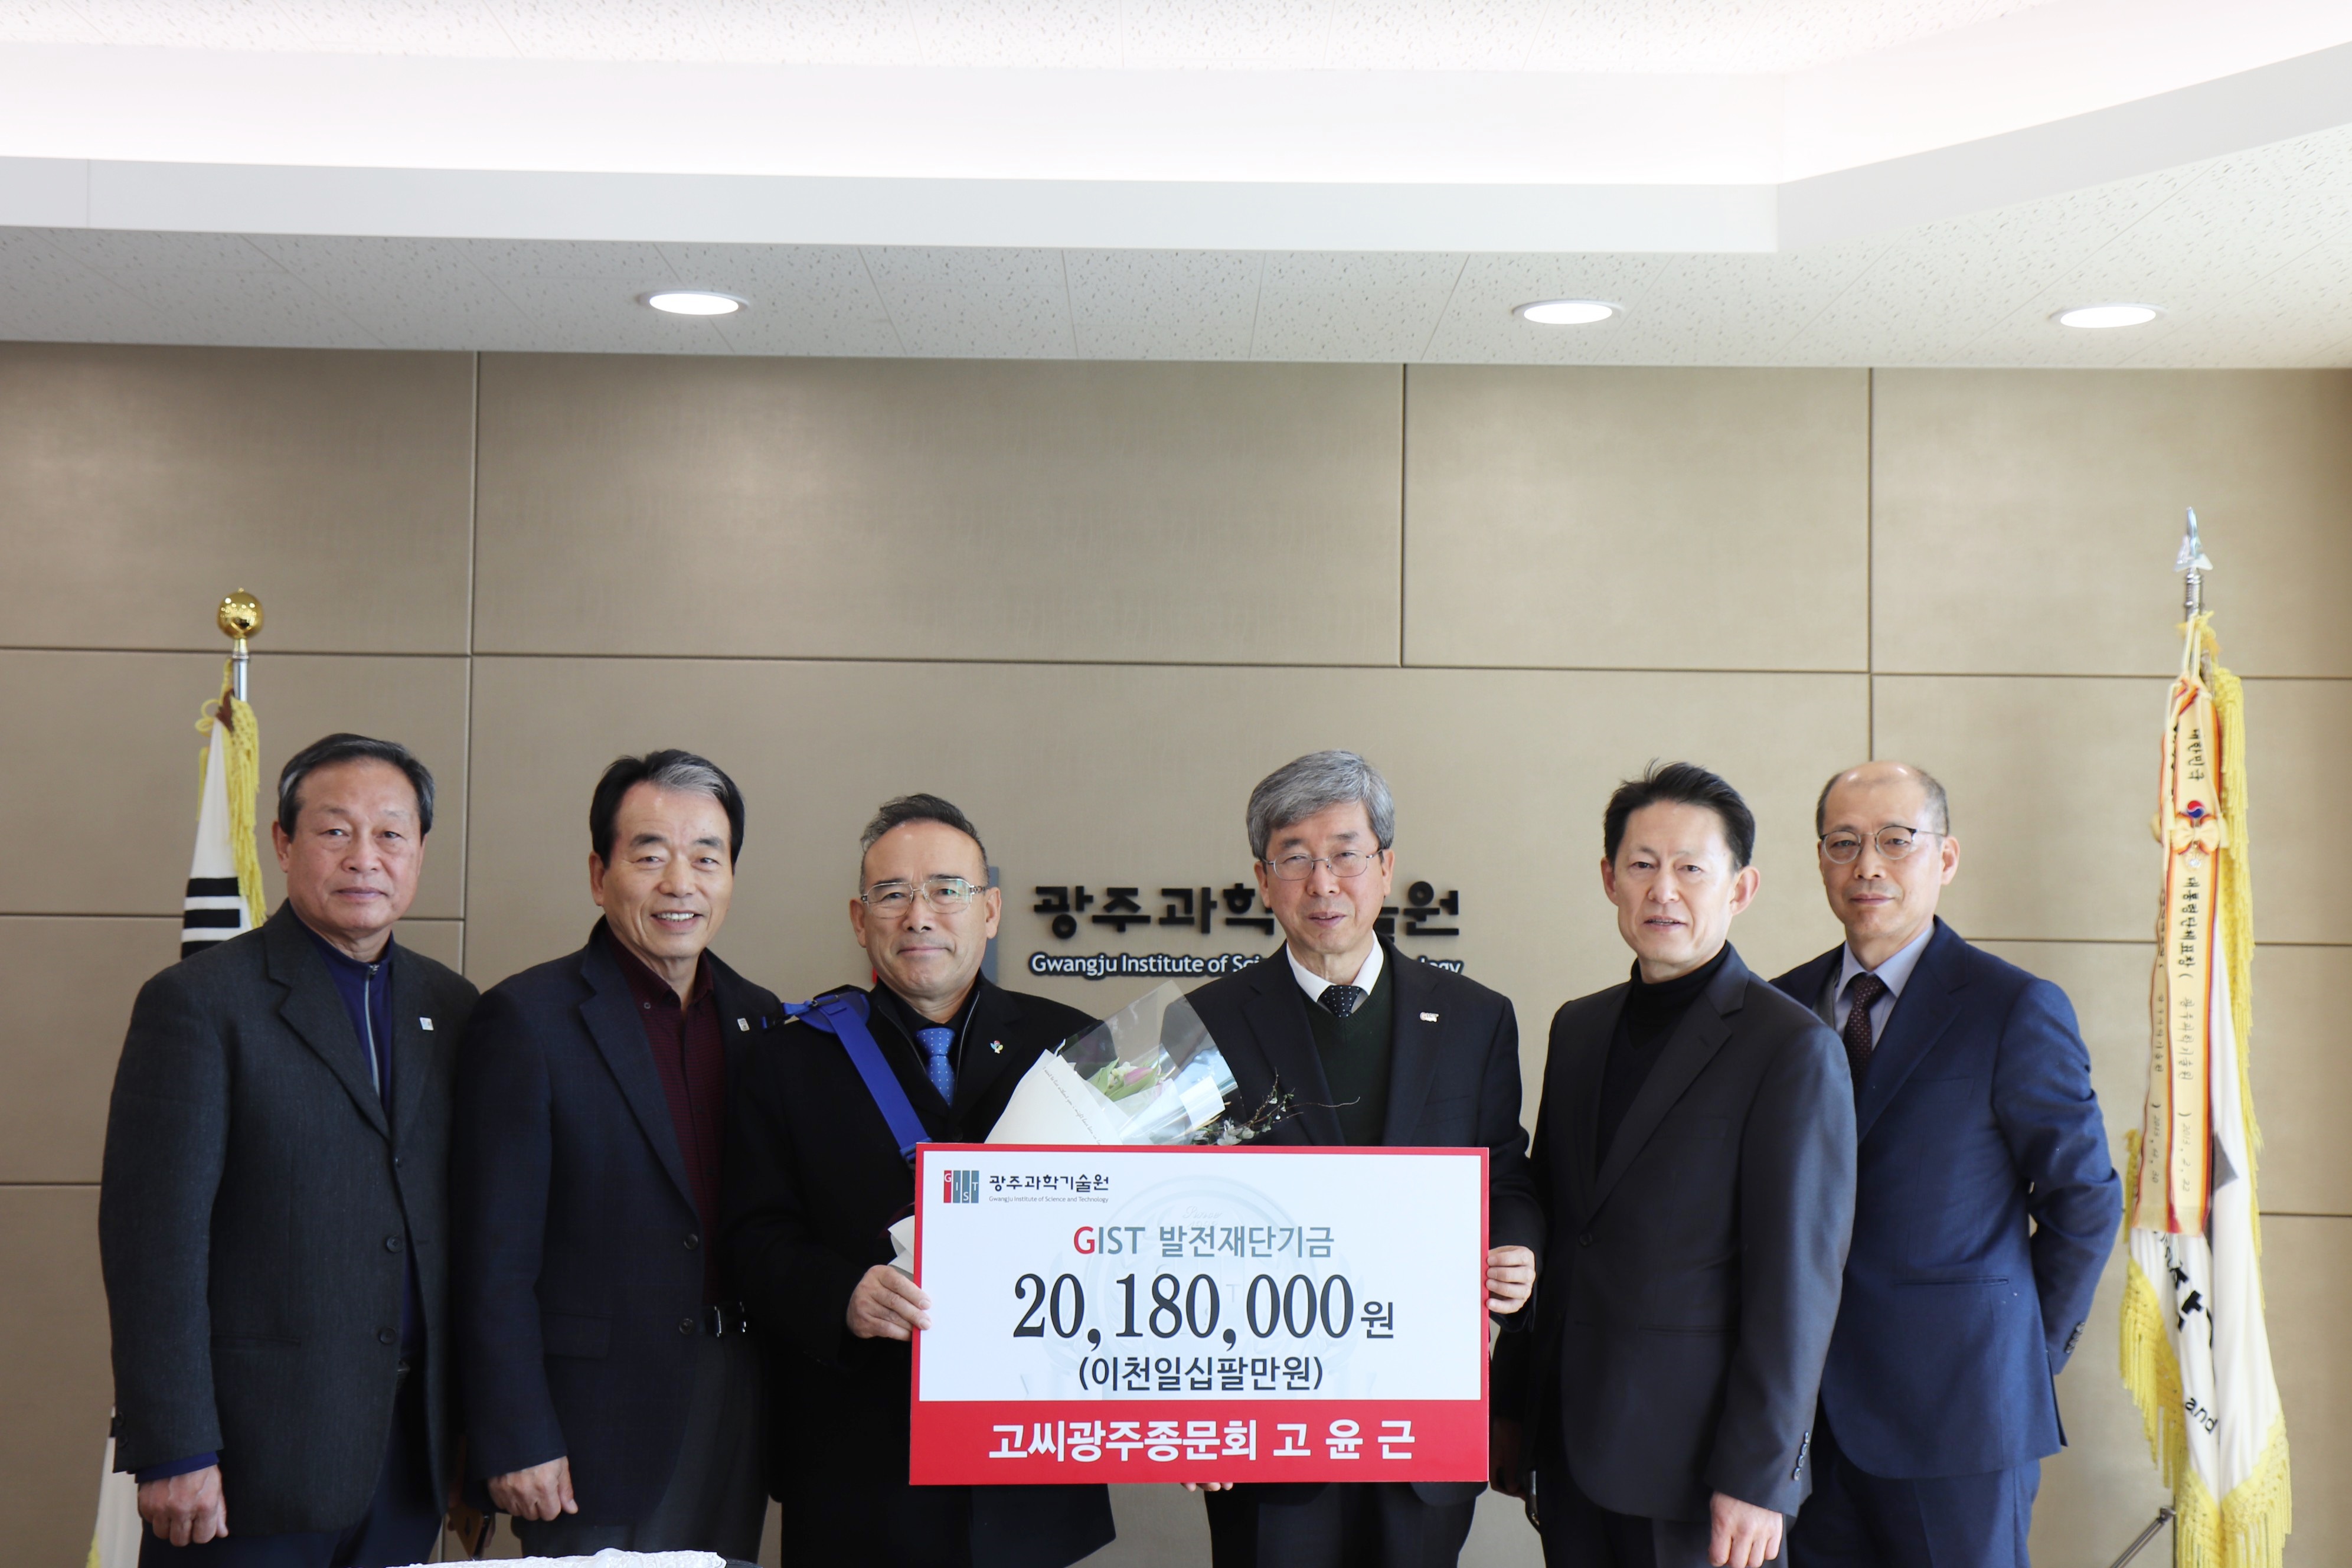 Goseong Gwangju Seungmun Society Executive Director Yoon-Keun Ko donates 20.18 million won to the GIST Development Fund 이미지